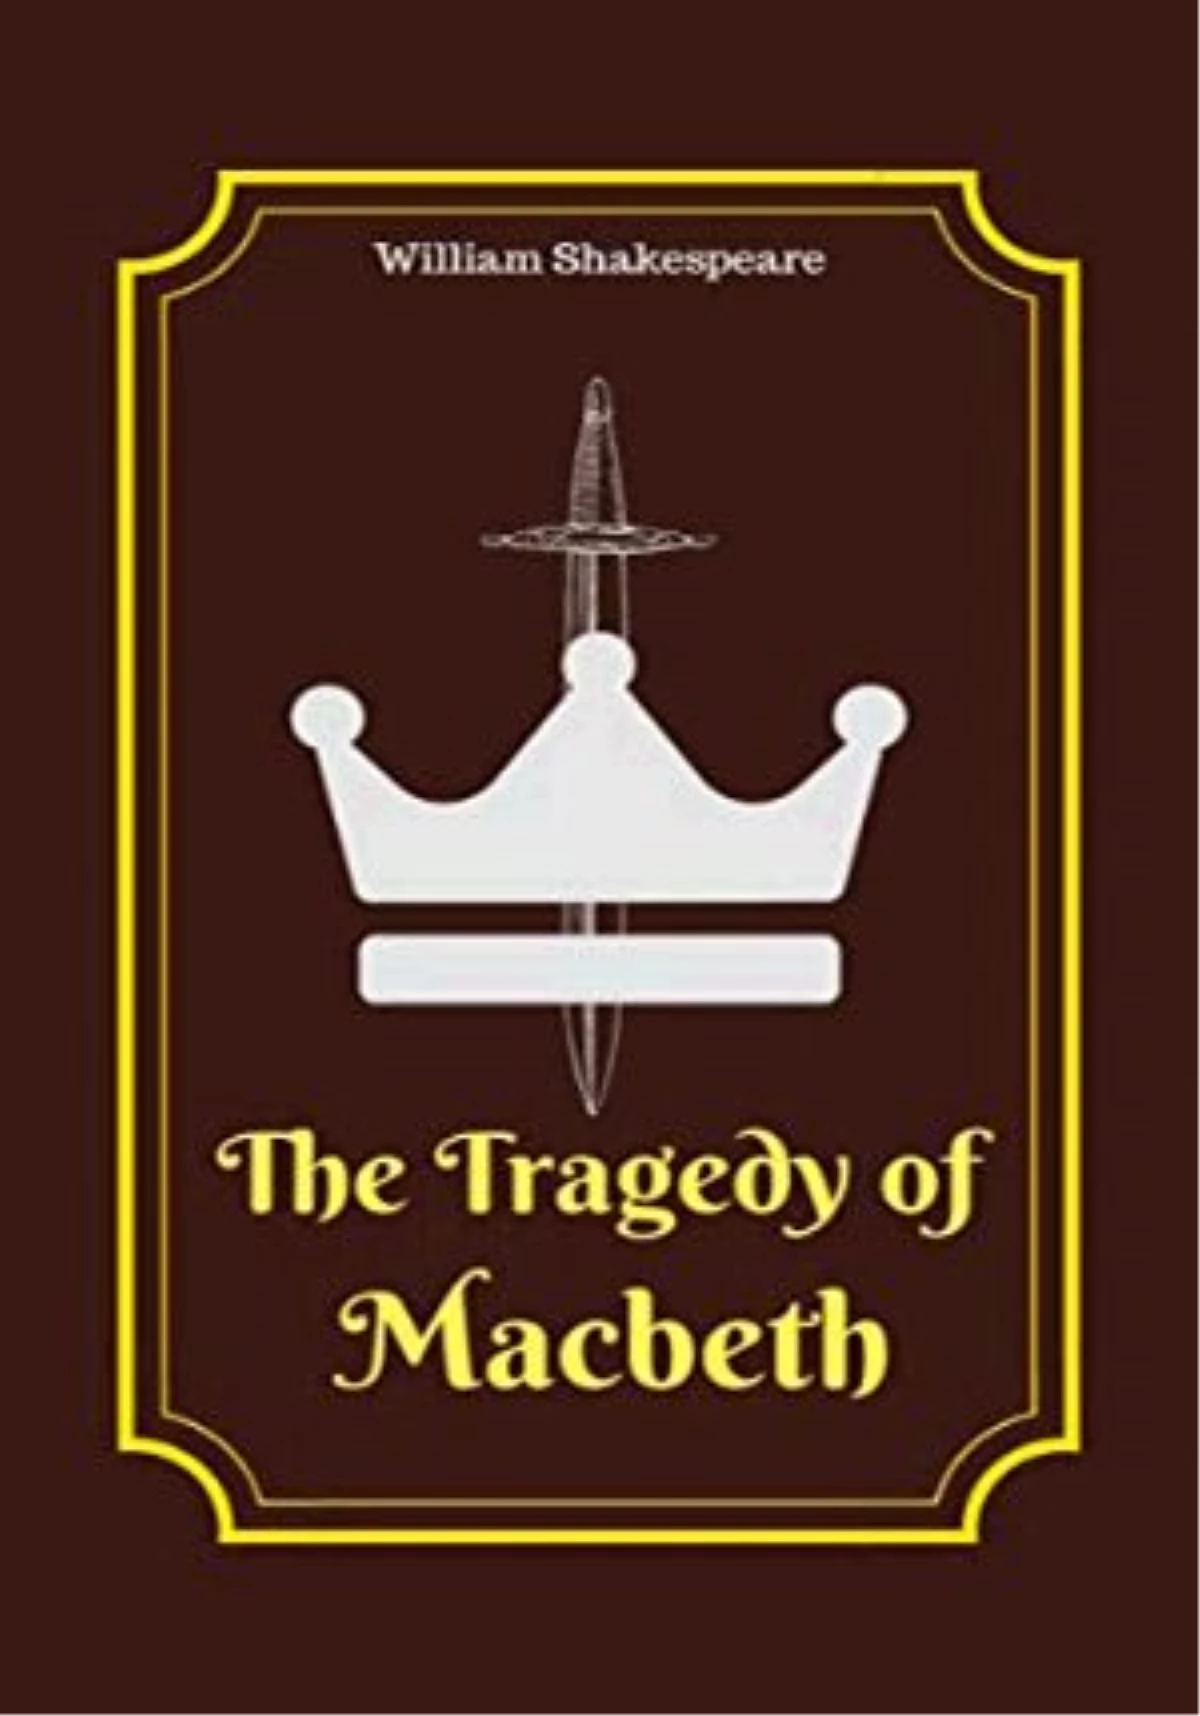 The Tragedy of Macbeth Filmi